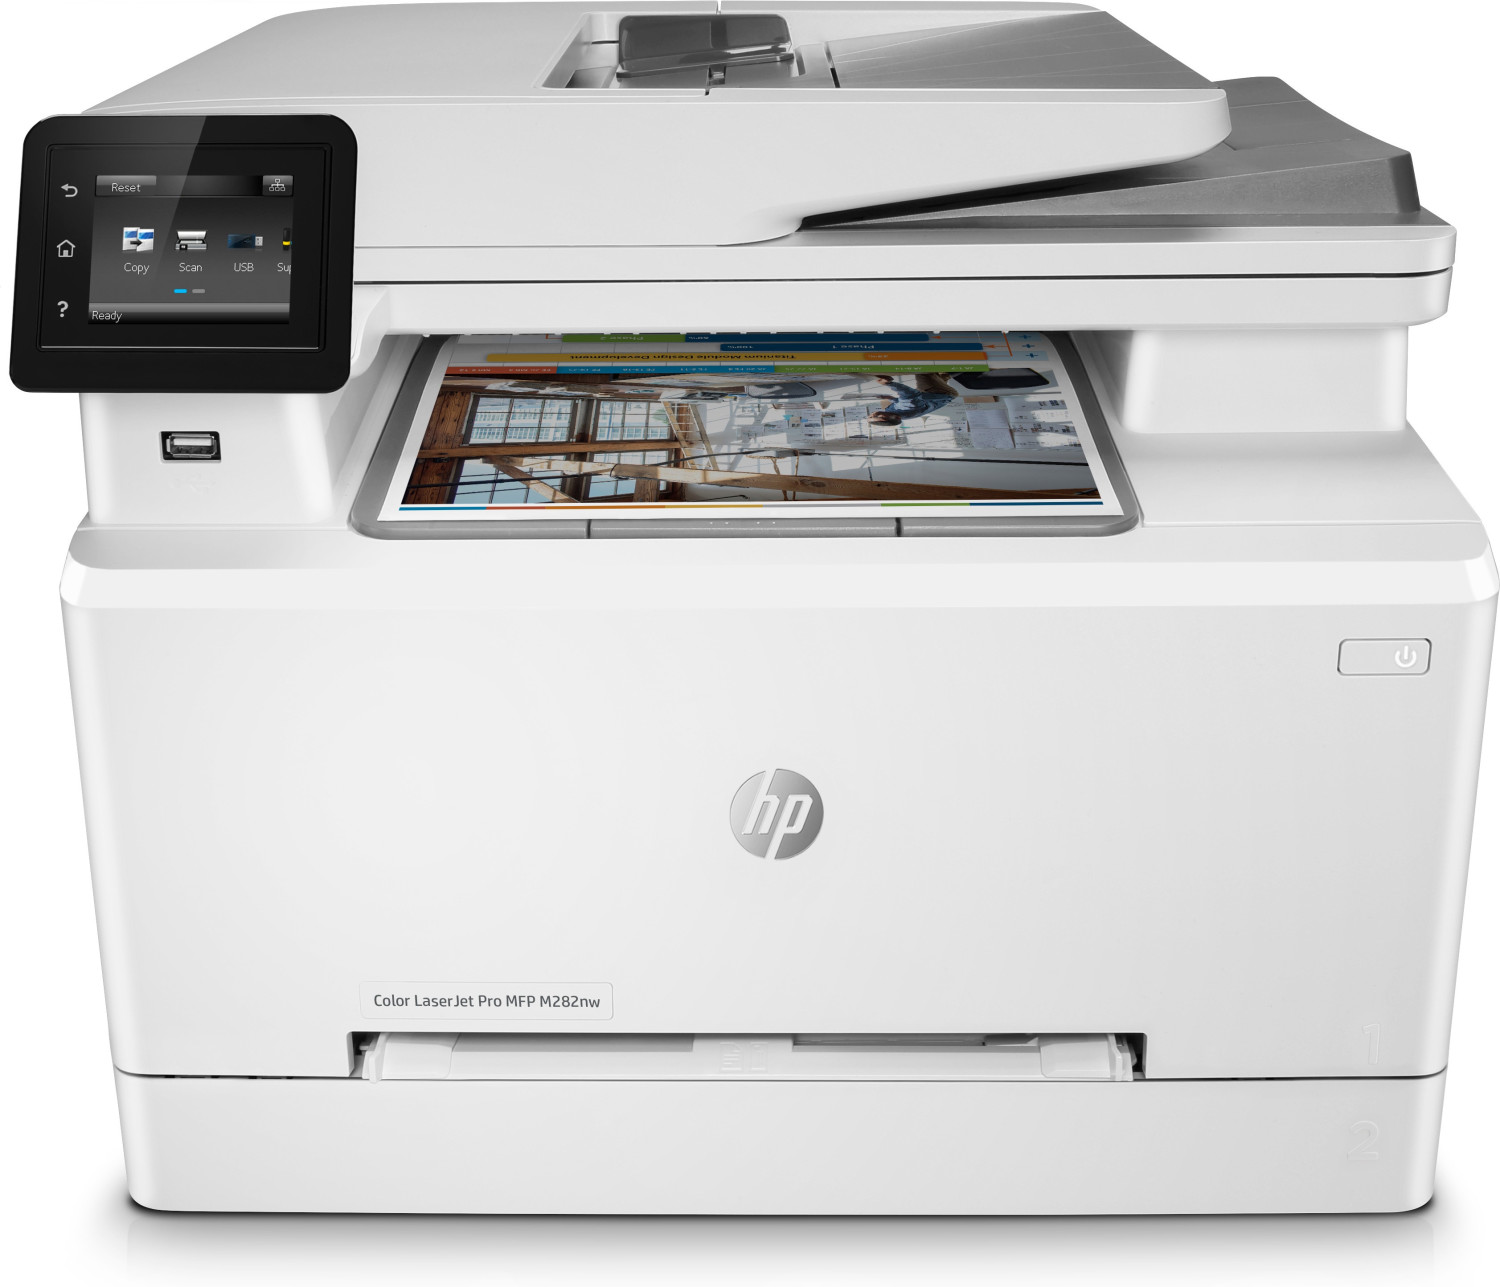 Image of HP Color LaserJet Pro Stampante multifunzione M282nw, Stampa, copia, scansione, stampa da porta USB frontale; scansione verso e-mail; alimentatore automatico di documenti (ADF) da 50 fogli senza pieghe;